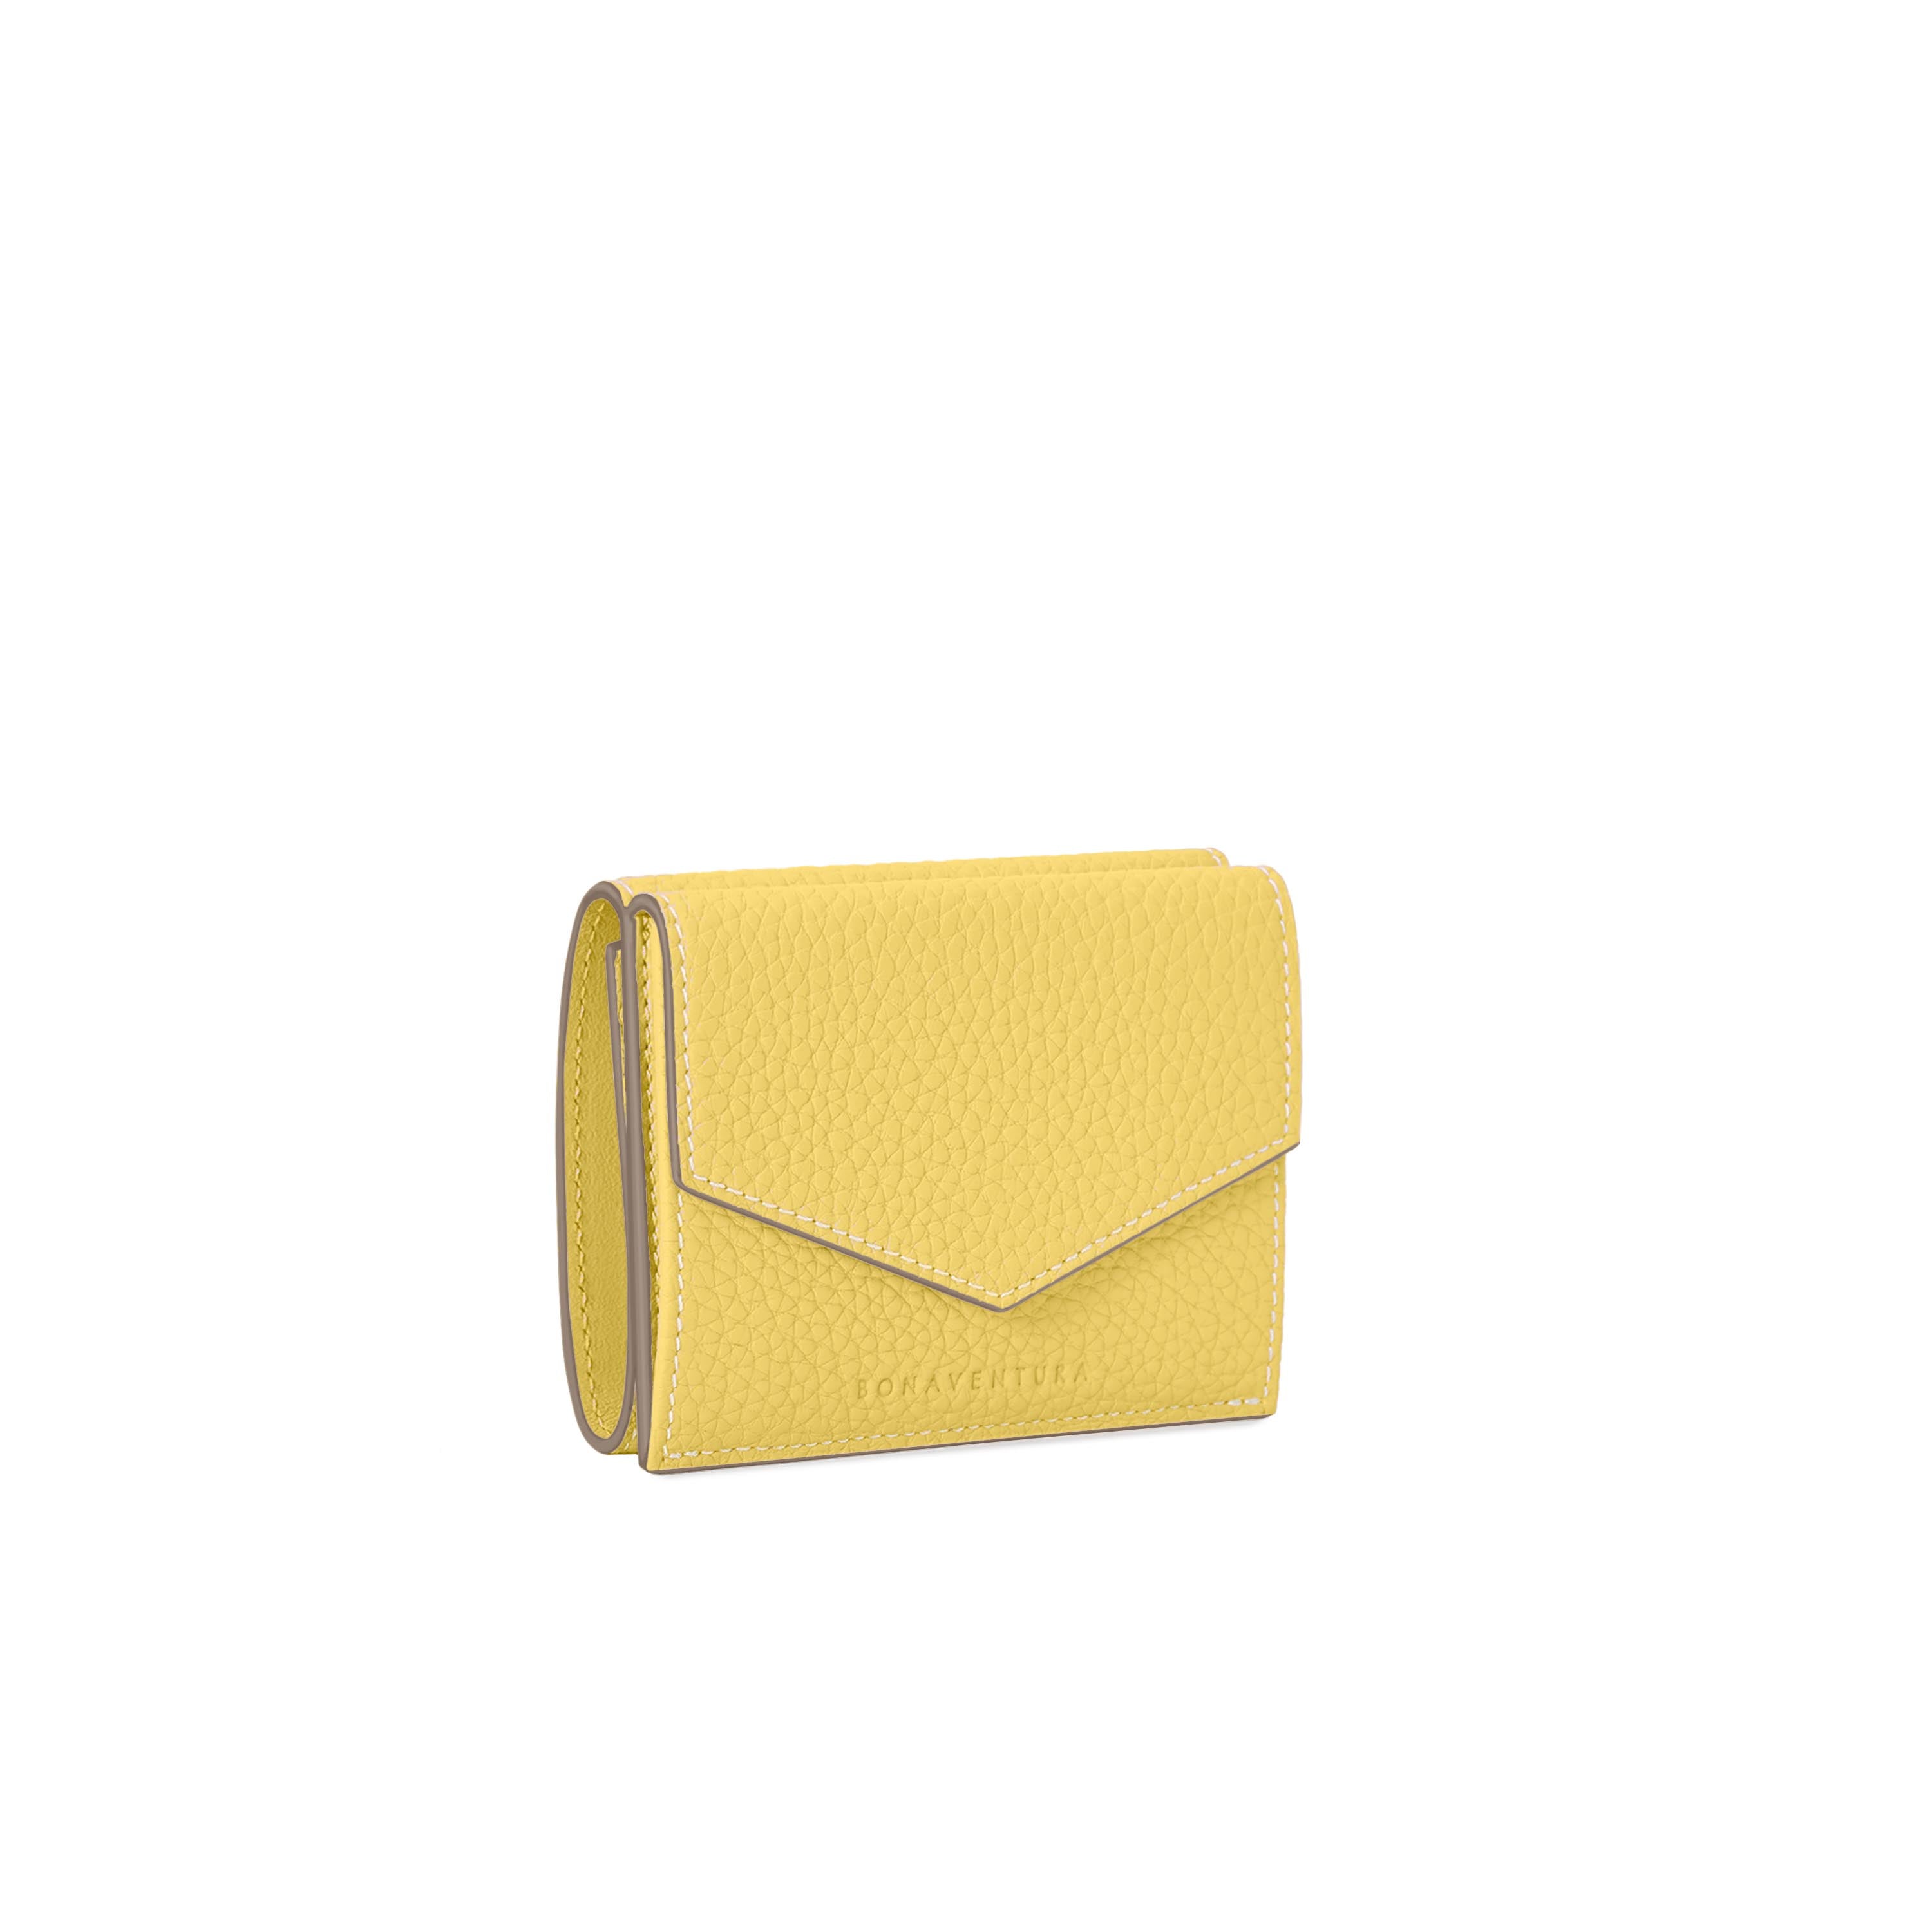 上質なレザーの財布 / カードケース – イタリア(ミラノ)発の高級革製品 